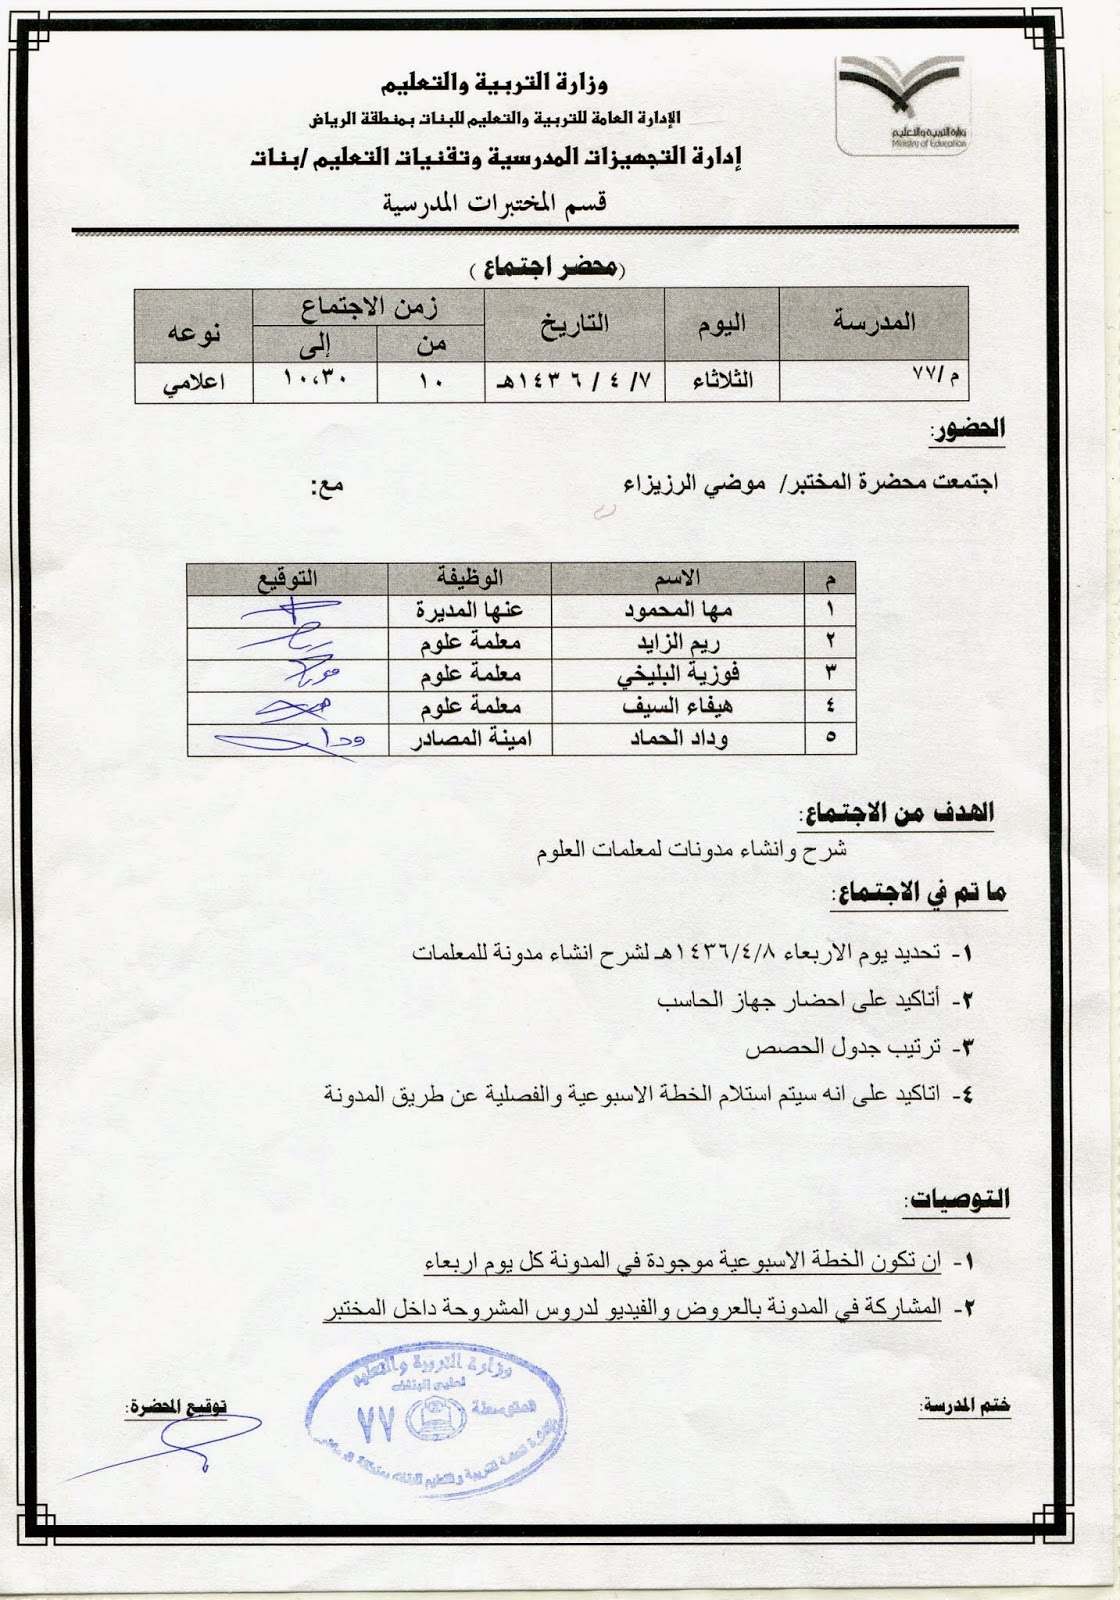 بوابة الرياض التعليمية الخدمات الالكترونية